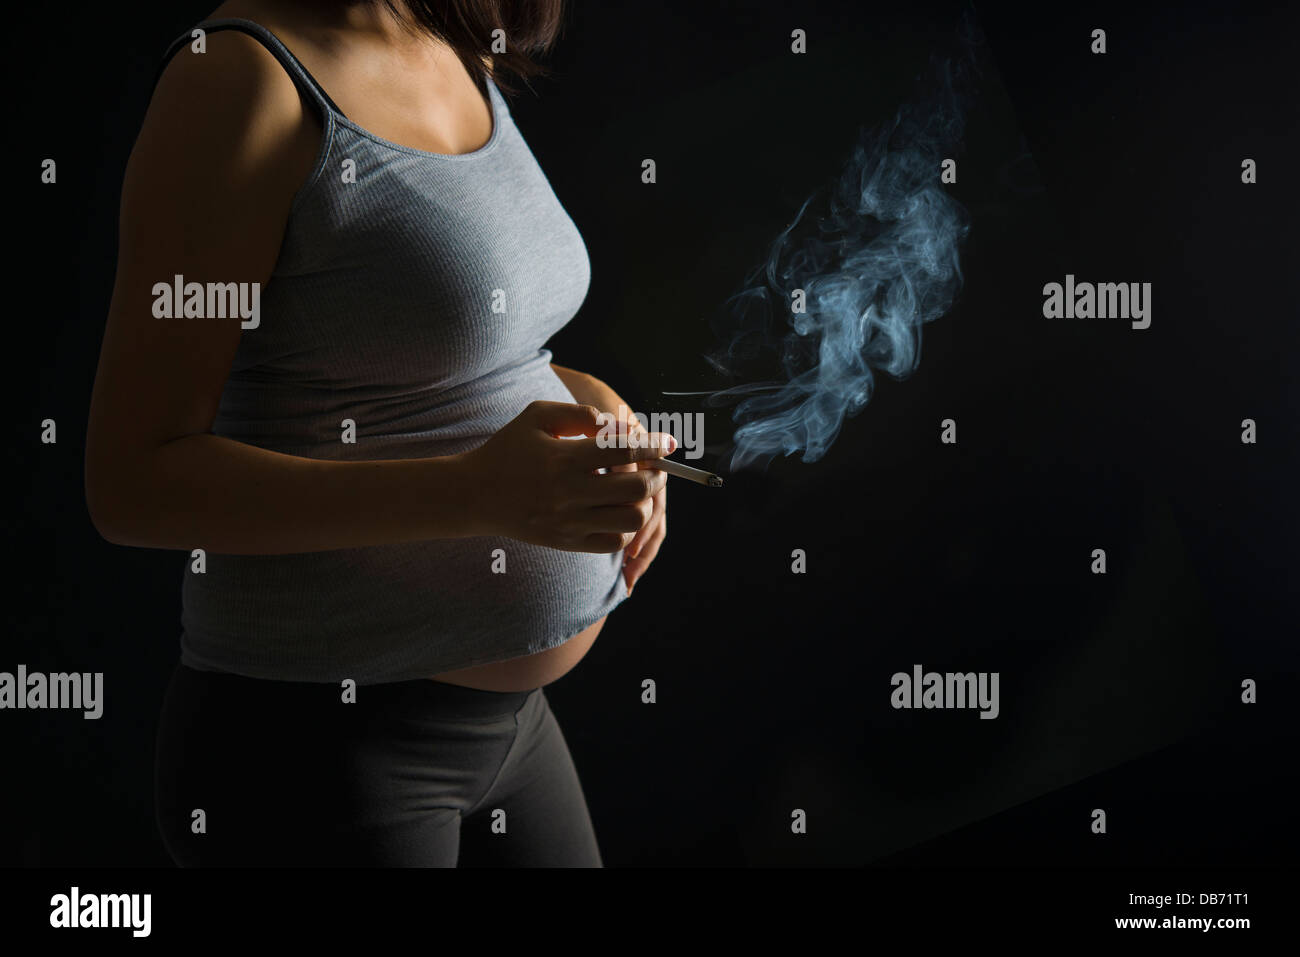 Fumeur mère enceinte sur un plus de lumière sombre dramatique Banque D'Images